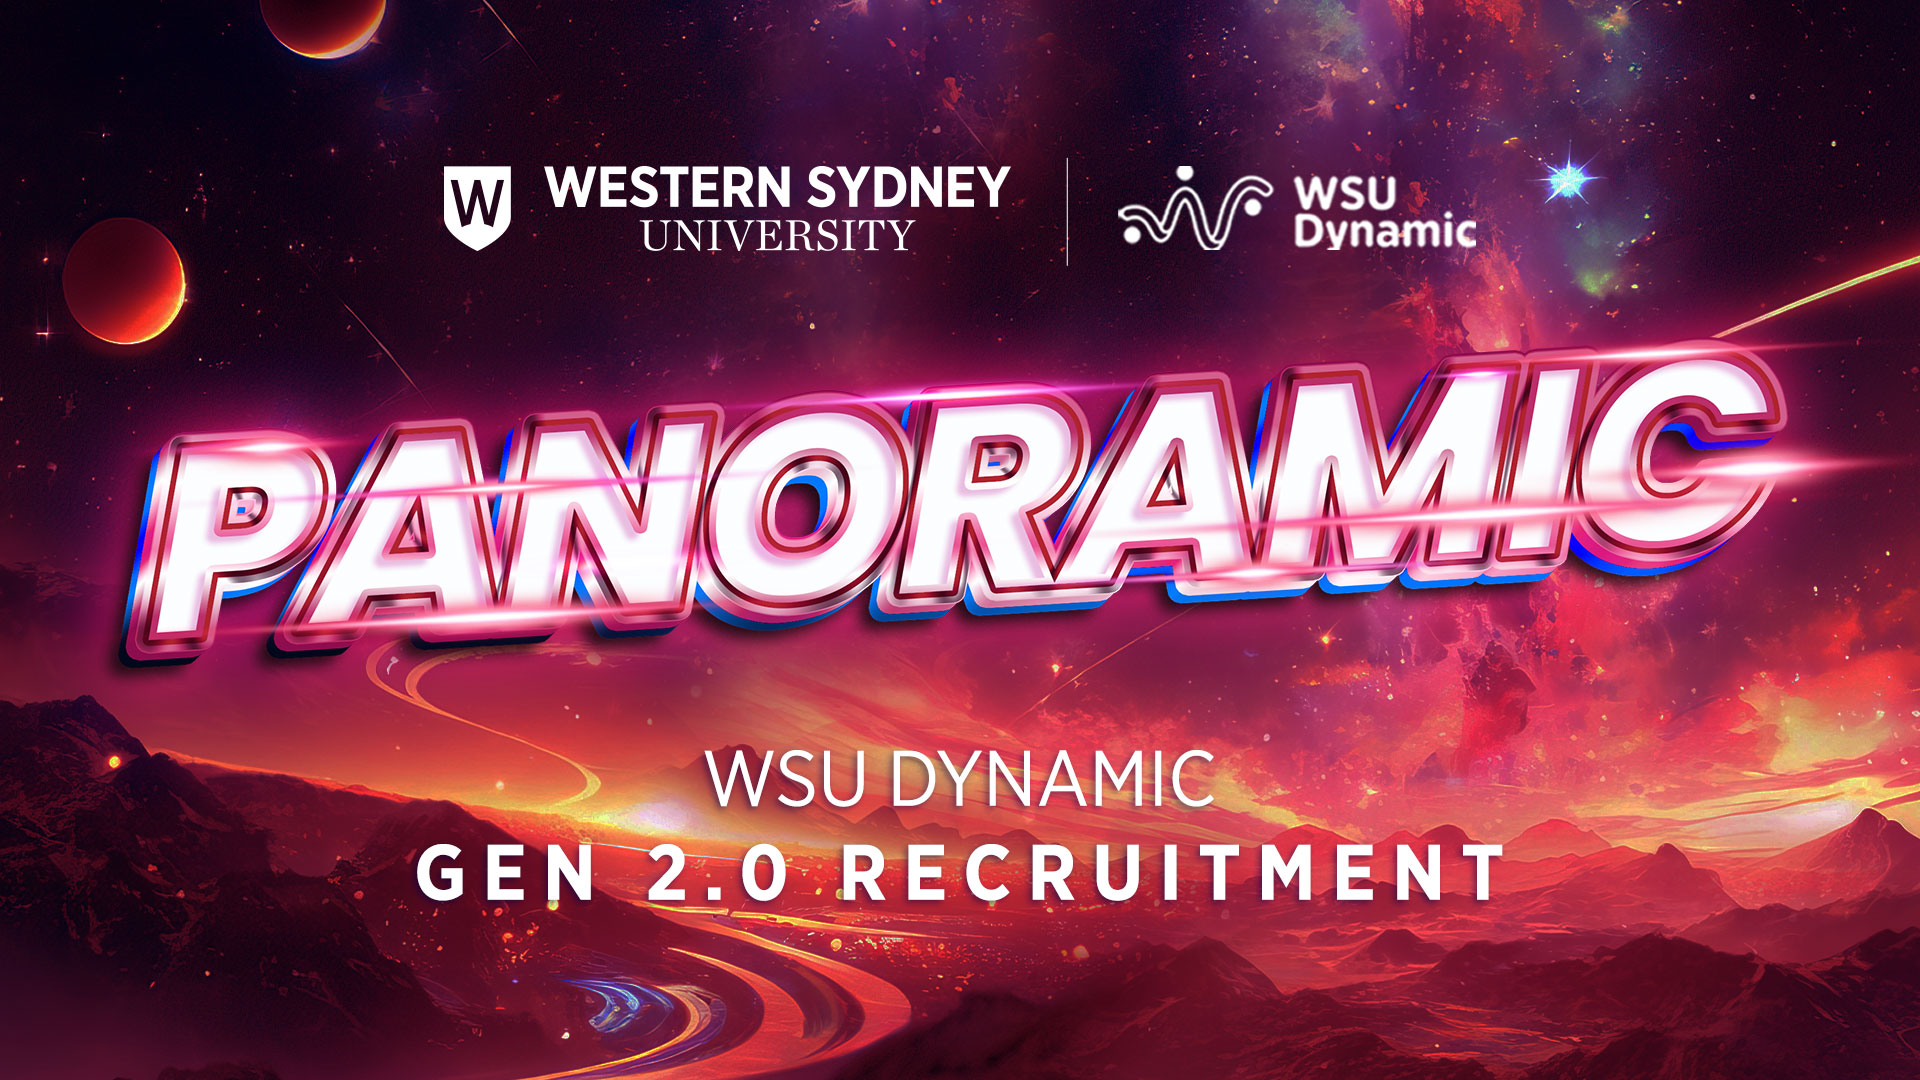 WSU Dynamic – Panoramic: Chính thức mở đơn tuyển thành viên Gen 2.0